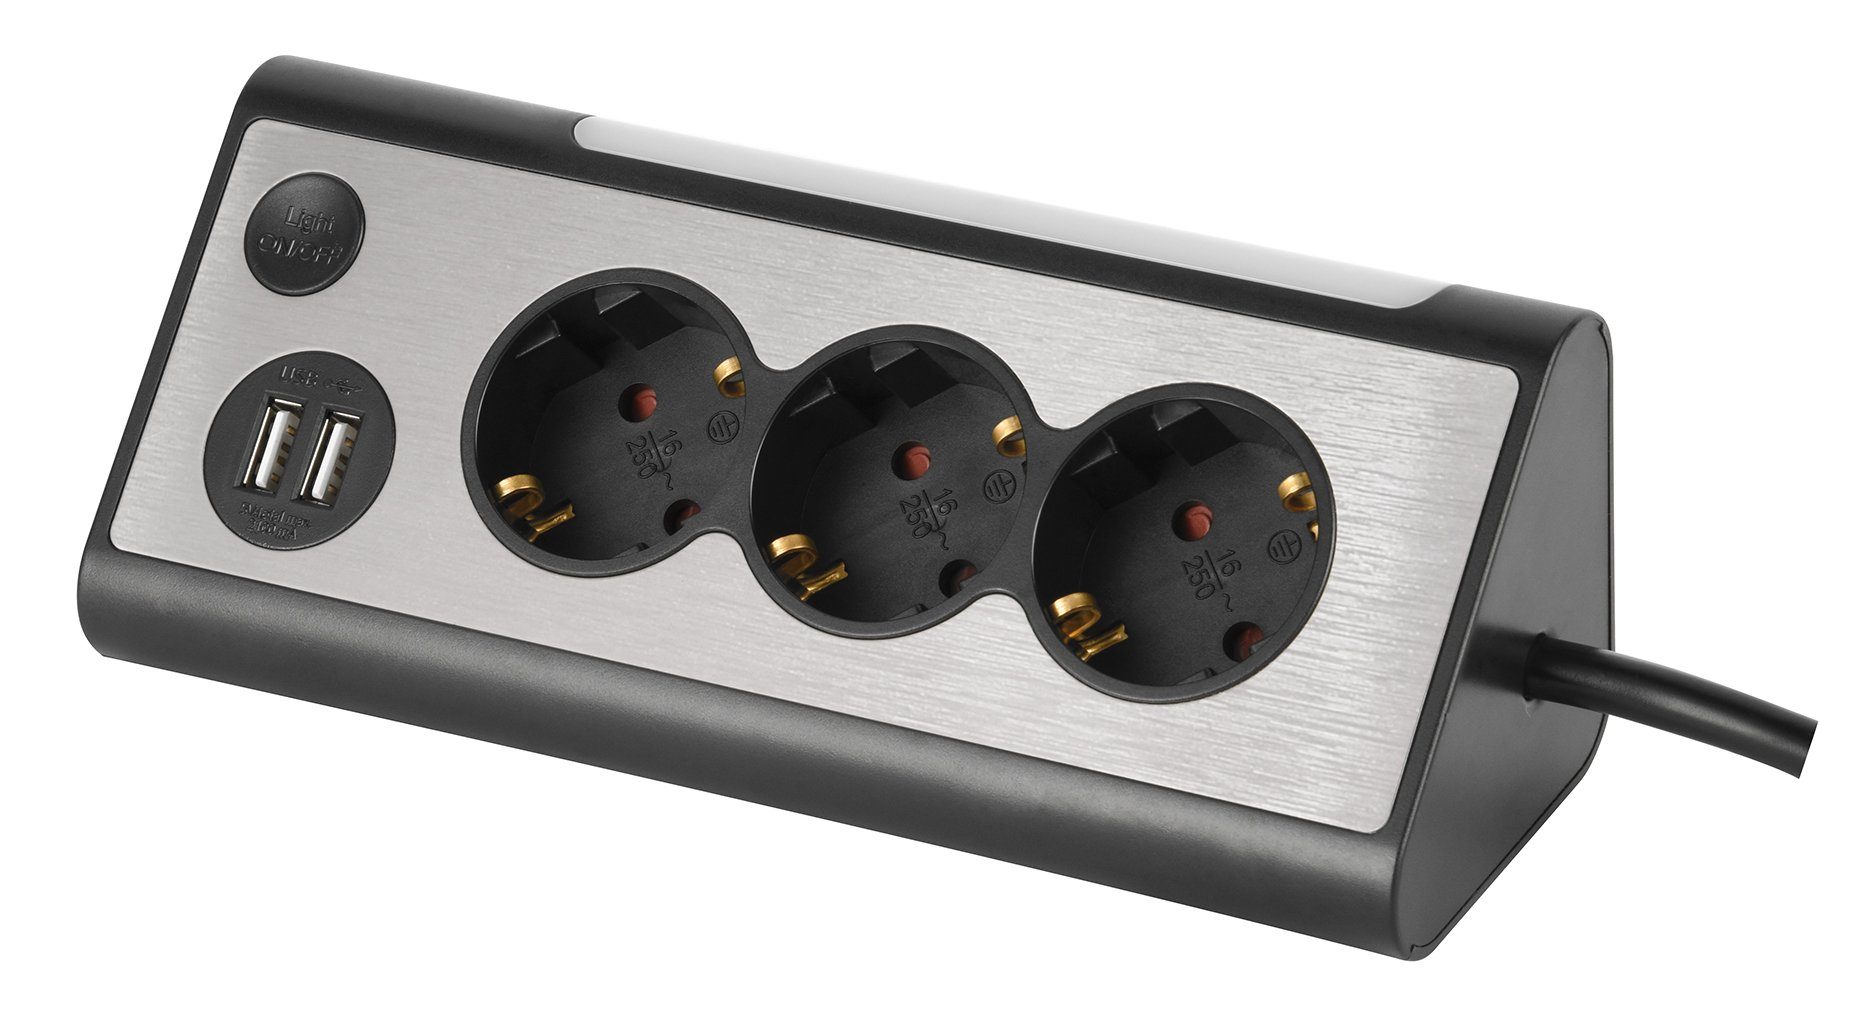 Transmedia Steckdosenleiste (LED Statusanzeige dreieckige Form  USB-Anschlüsse, Kabellänge 1.5 m), Eck-Steckdosenleiste 1,5m, schwarz (NV  70-1,5 L) online kaufen | OTTO